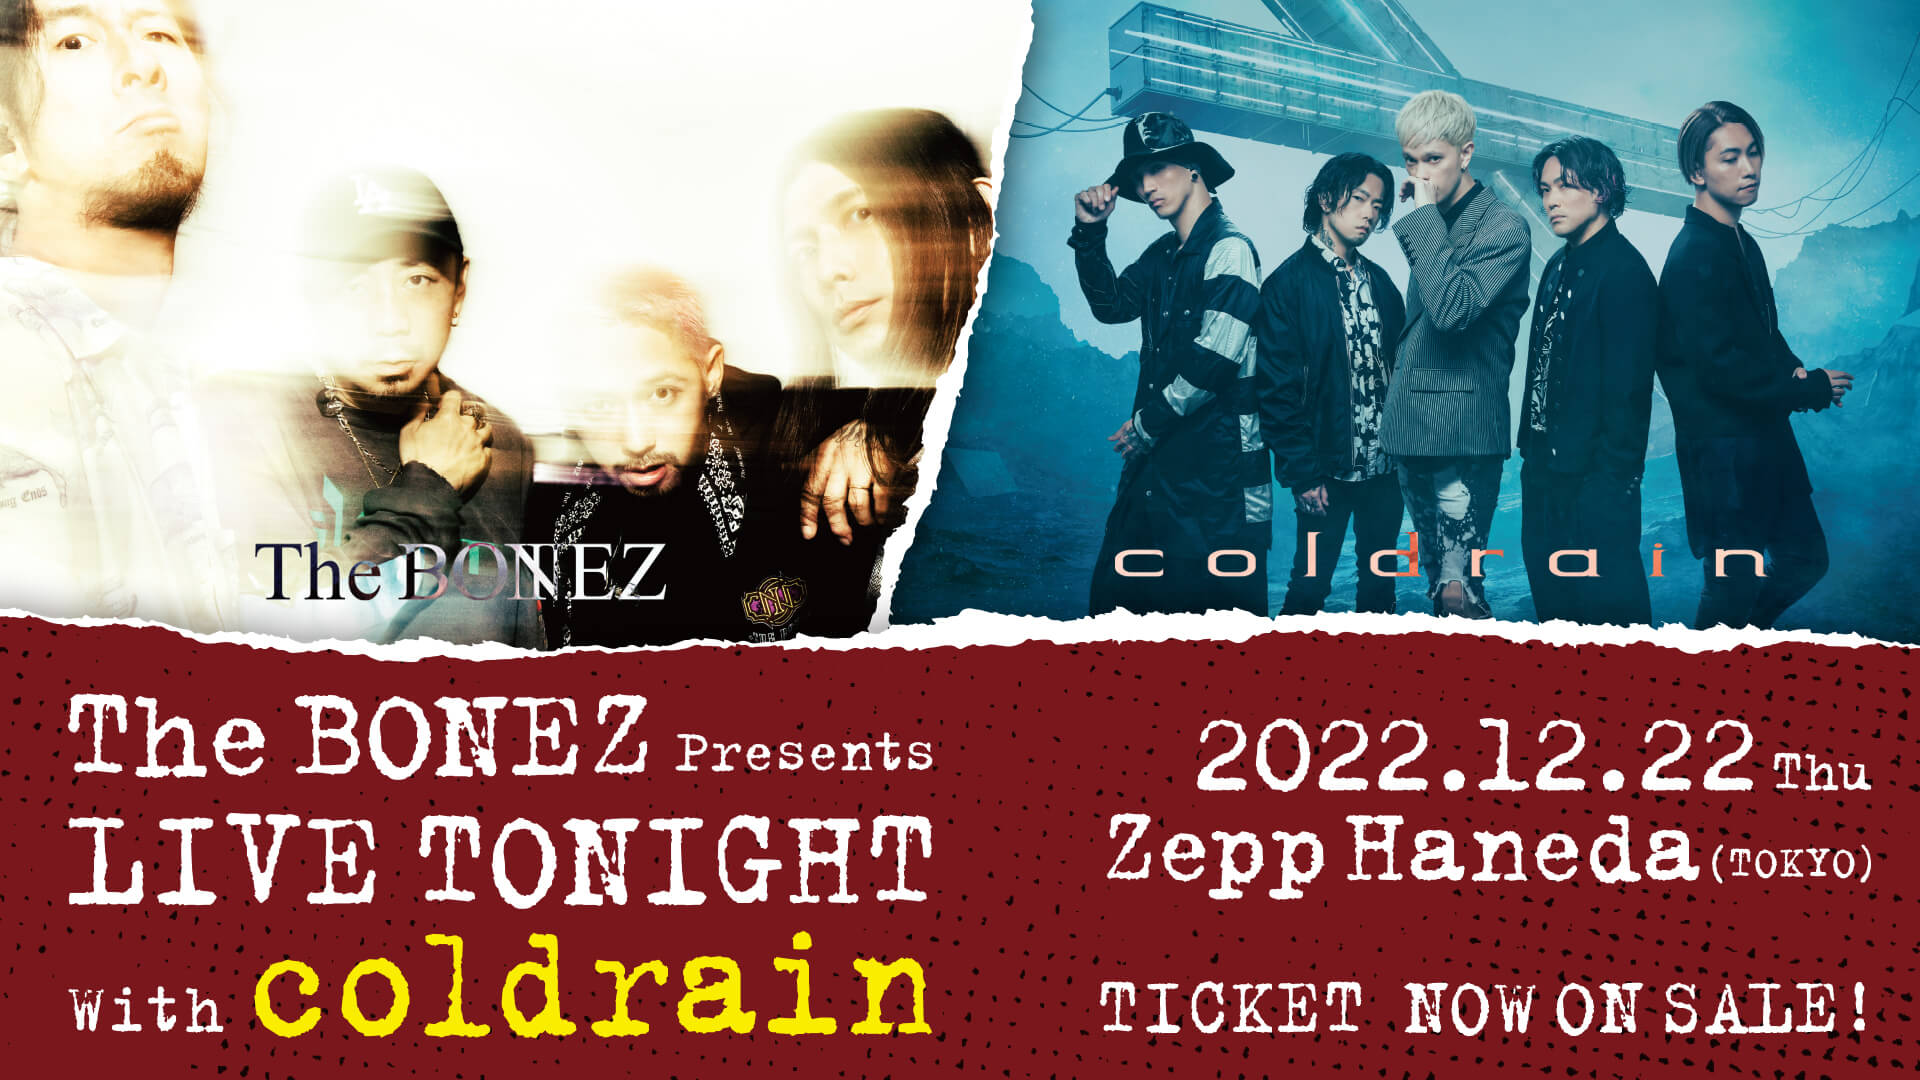 ライブDVD / Blu-ray「We are The BONEZ Tour 2021 Live and Now」発売 